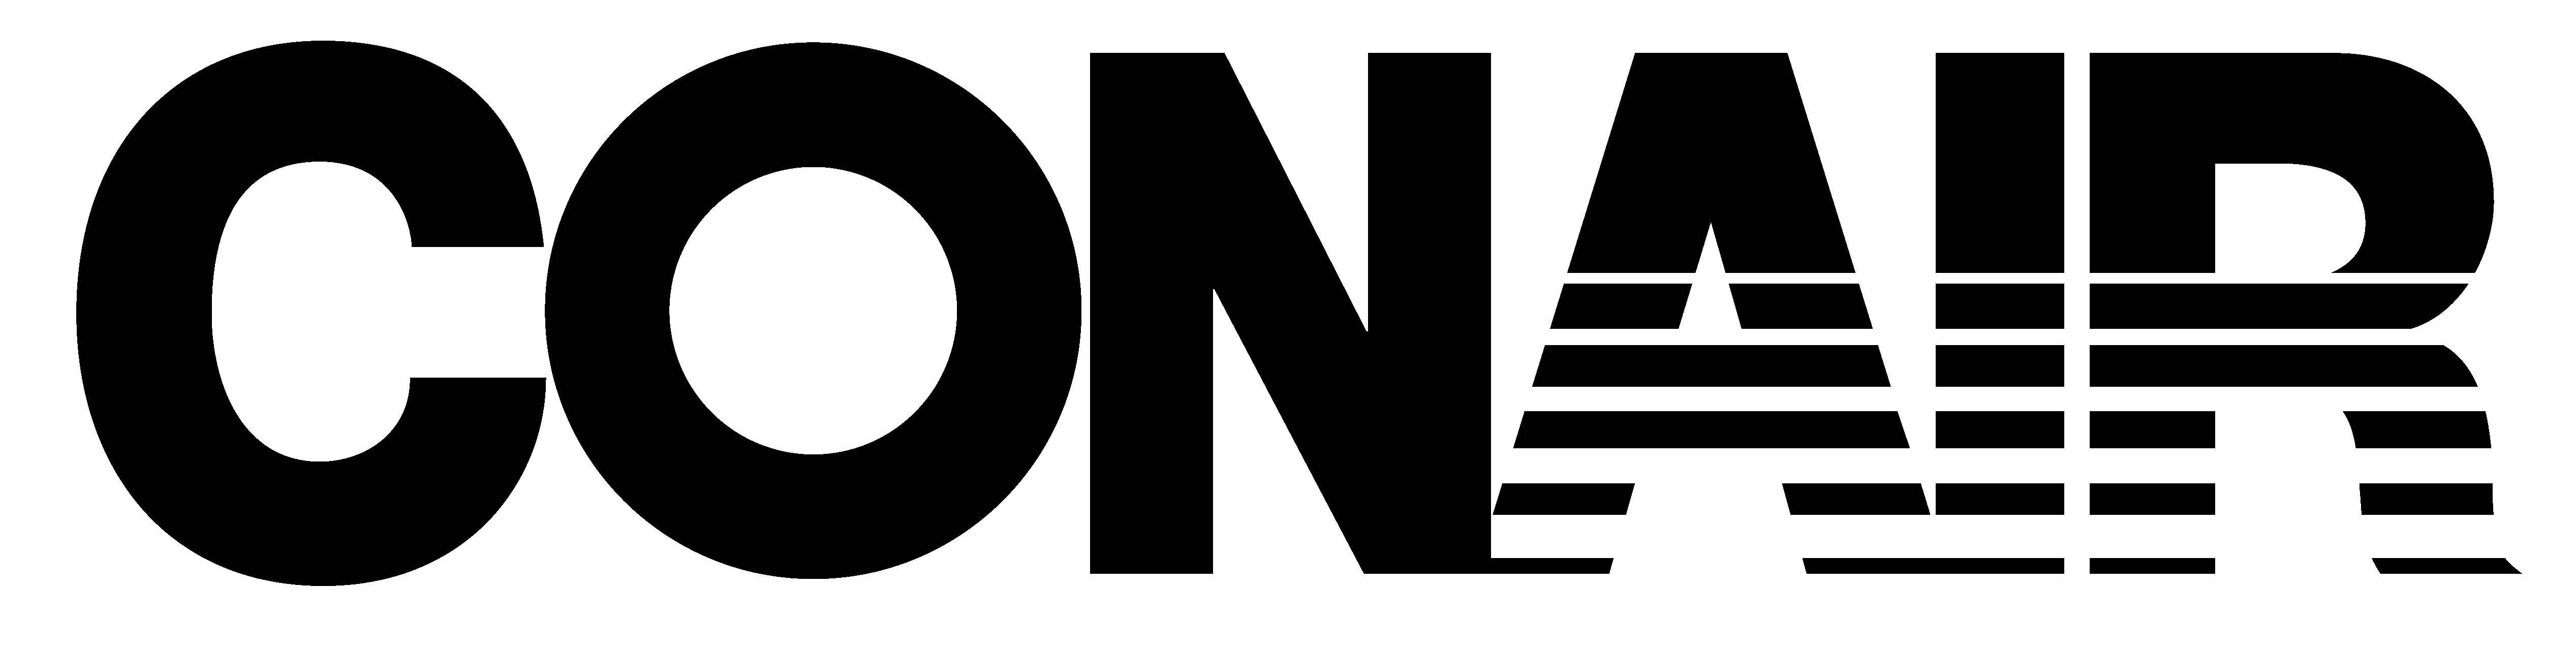 Conair Logo - ConAir-Logo - Feldkamp Marketing